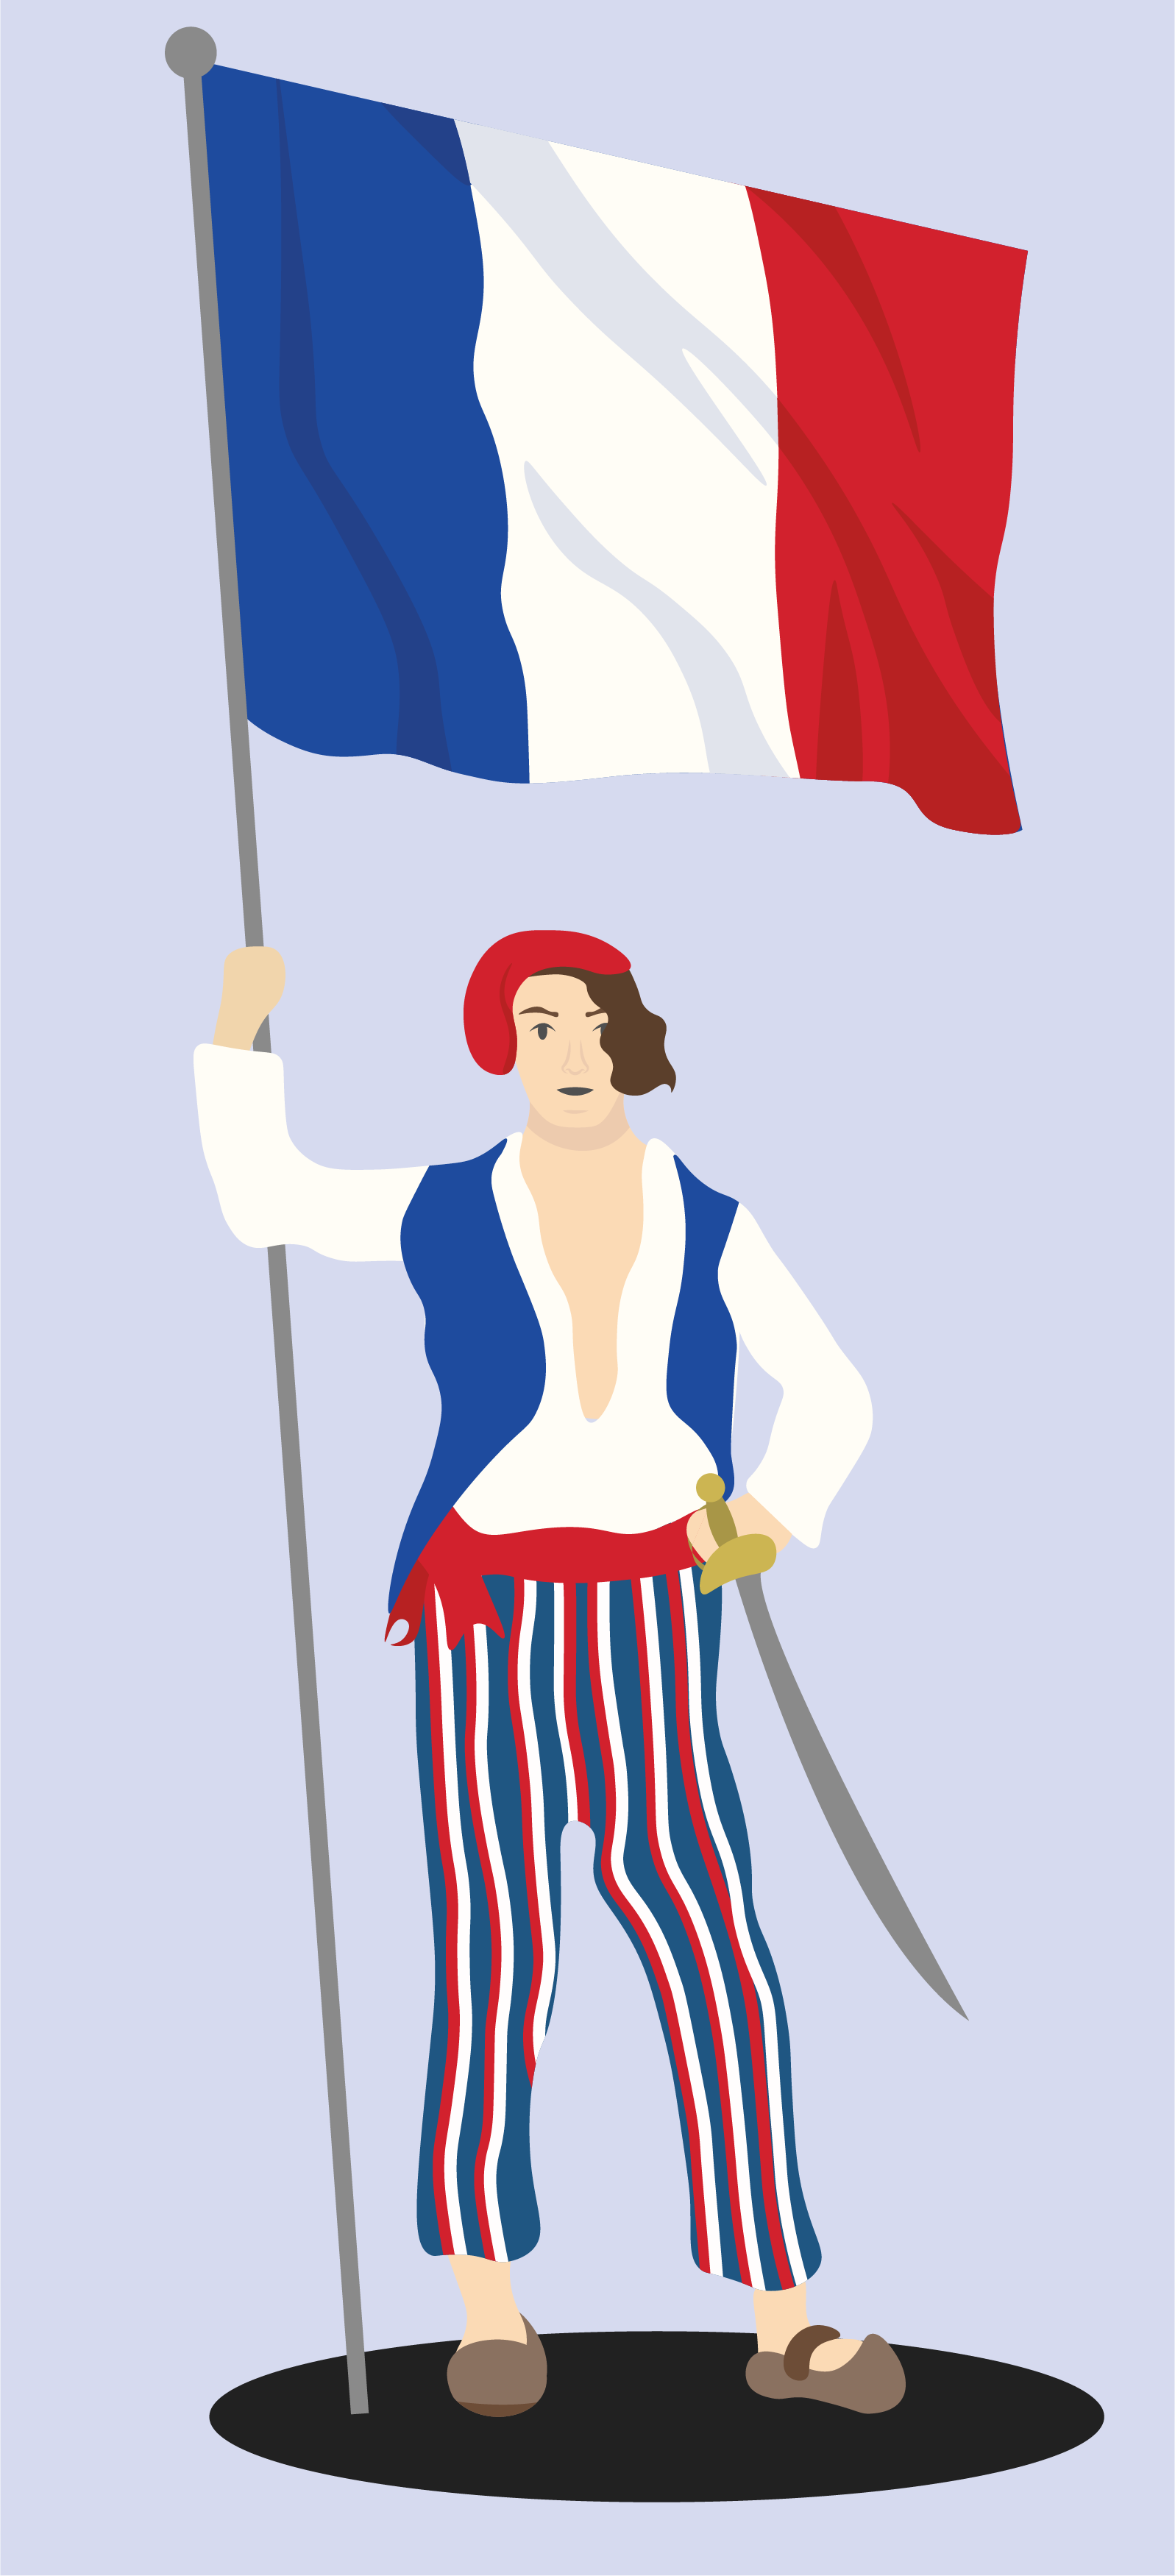 Geschichte; Französische Revolution; 1. Sek / Bez / Real; Radikale Phase der Französischen Revolution